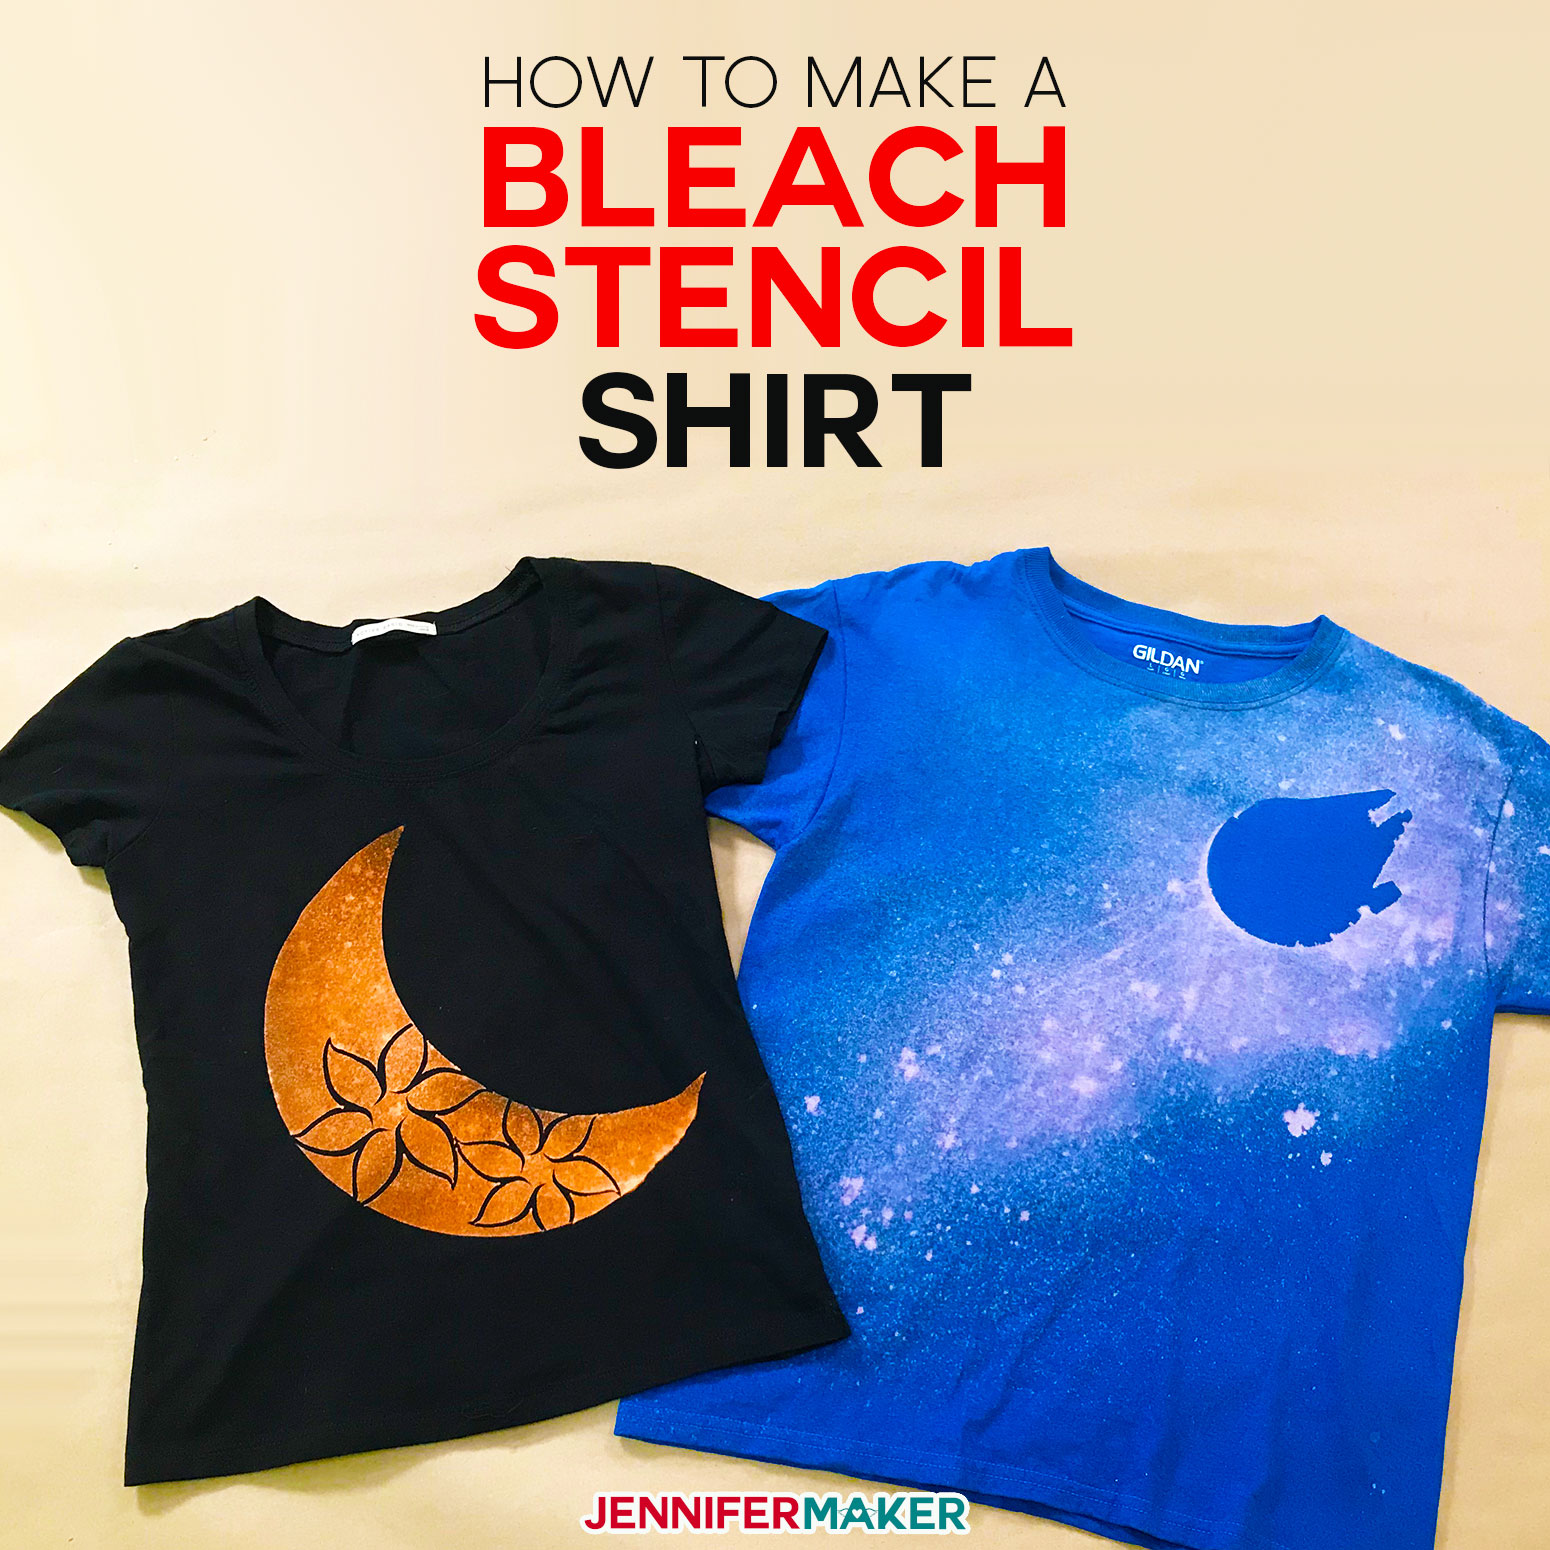 Bleach Stencil Shirt Made with a Cricut!